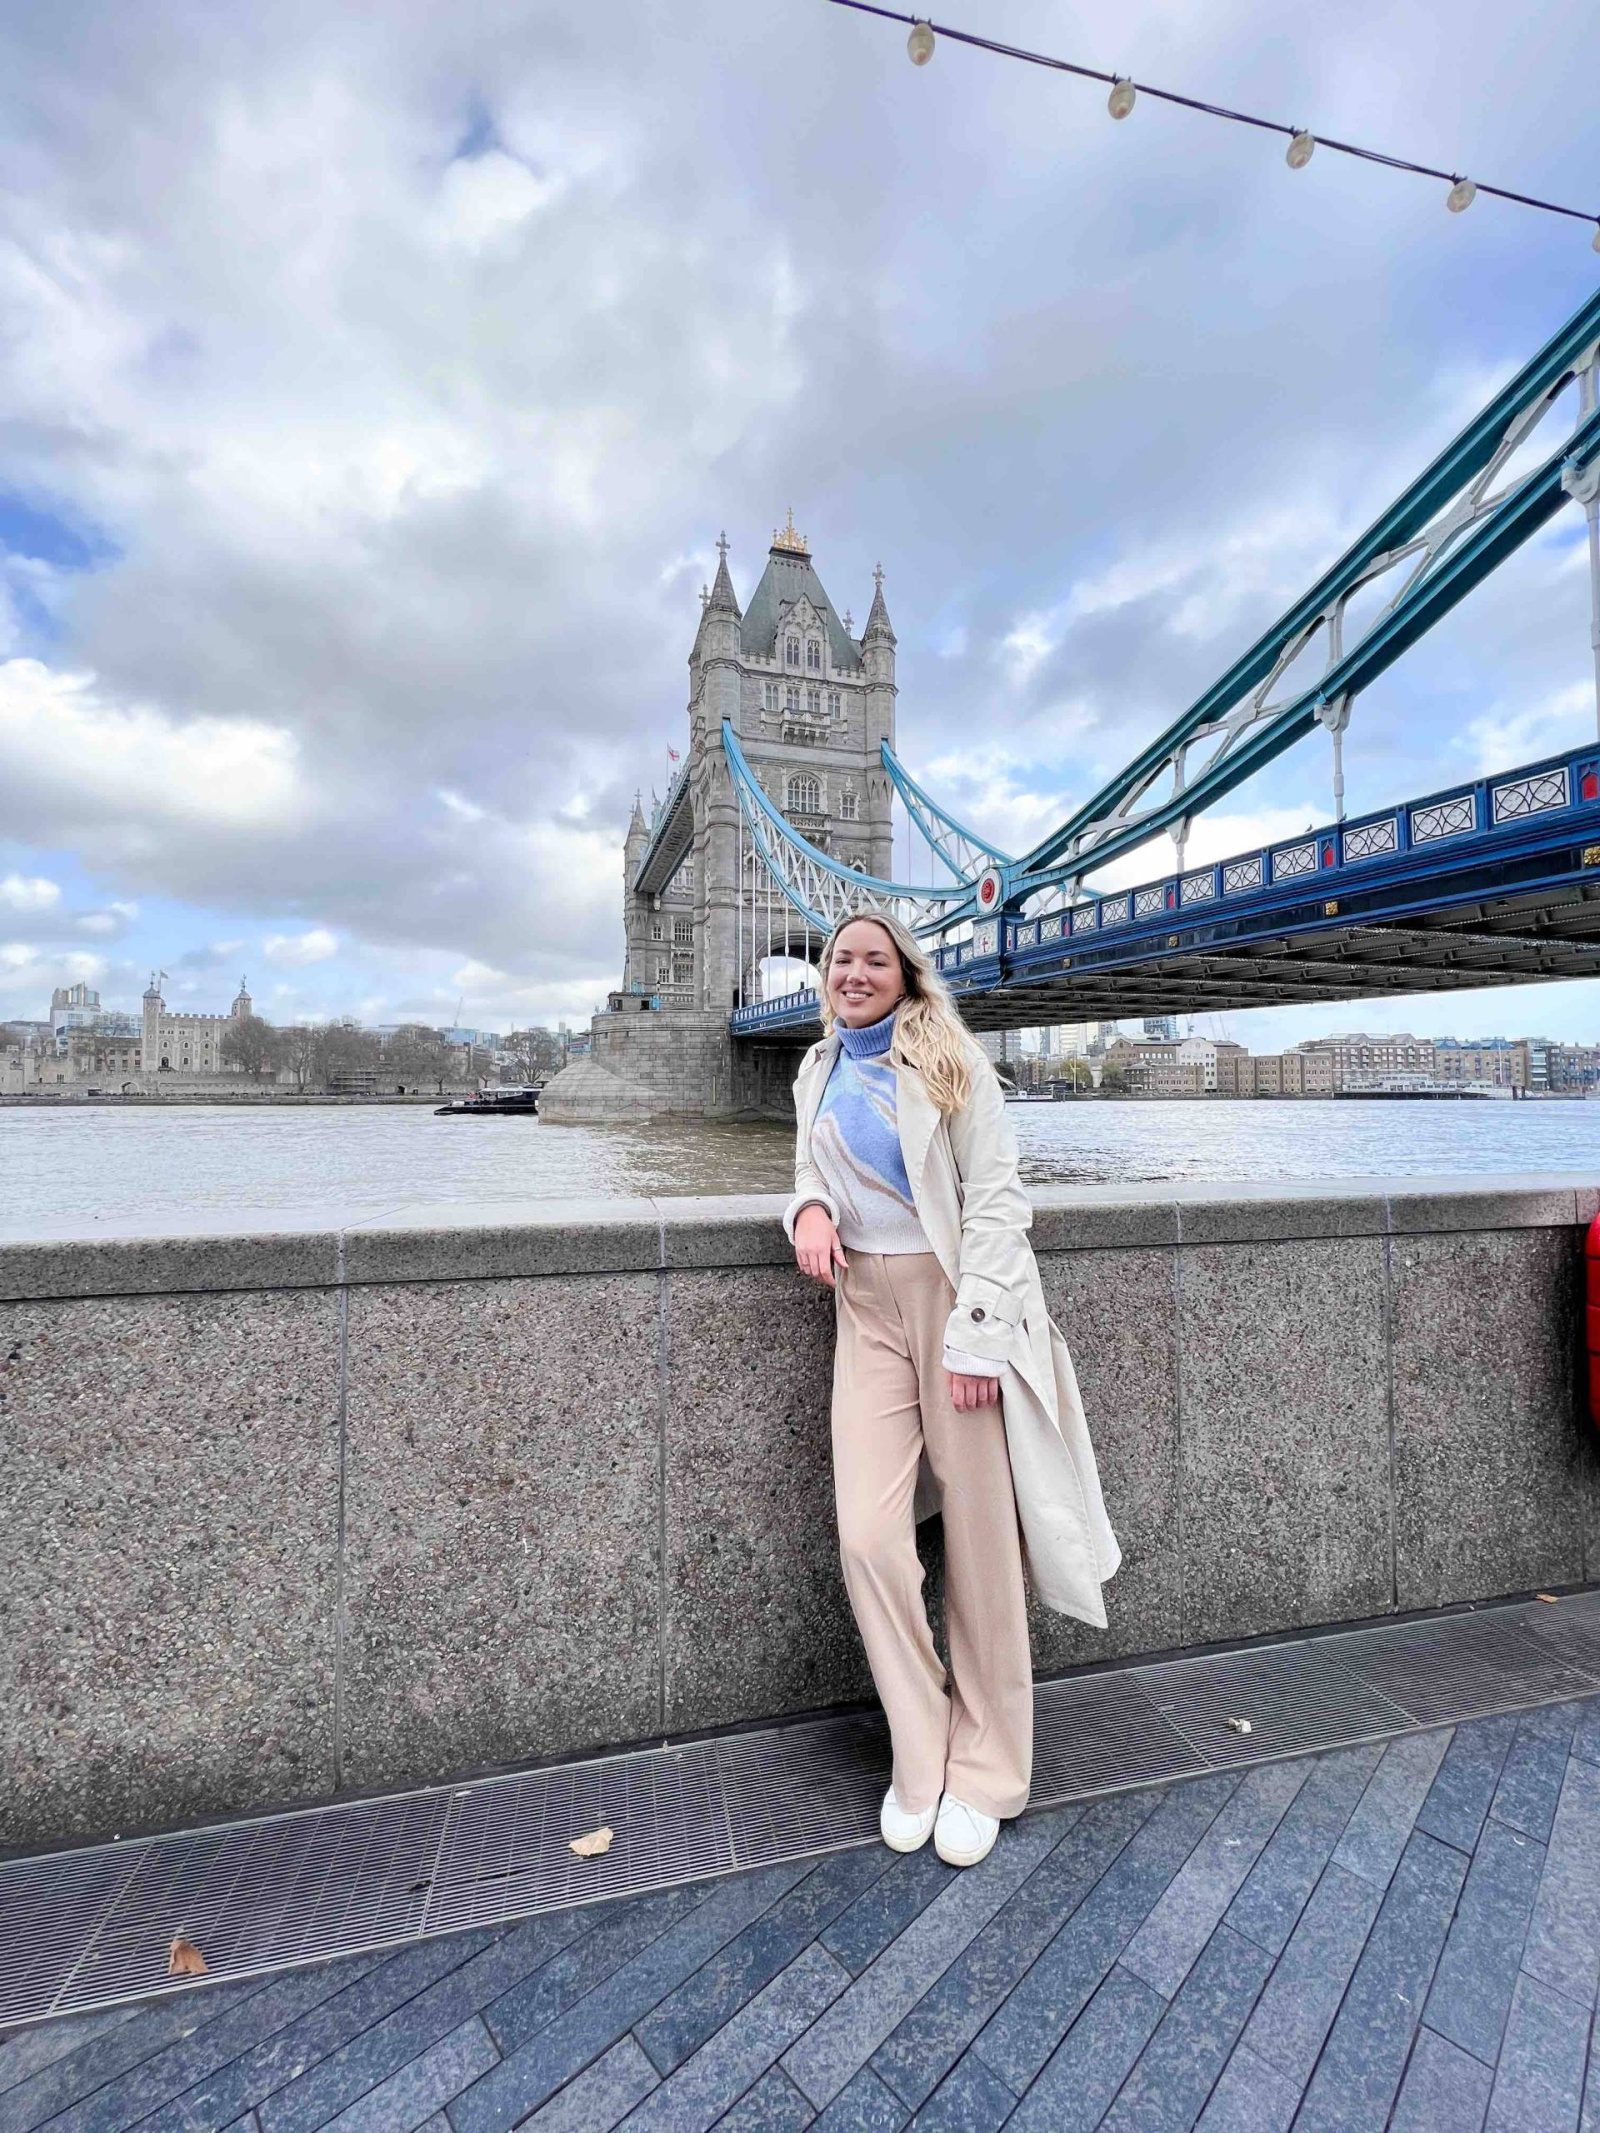 Reseña: Explorando la capital en un crucero por el río Londres con el té de la tarde